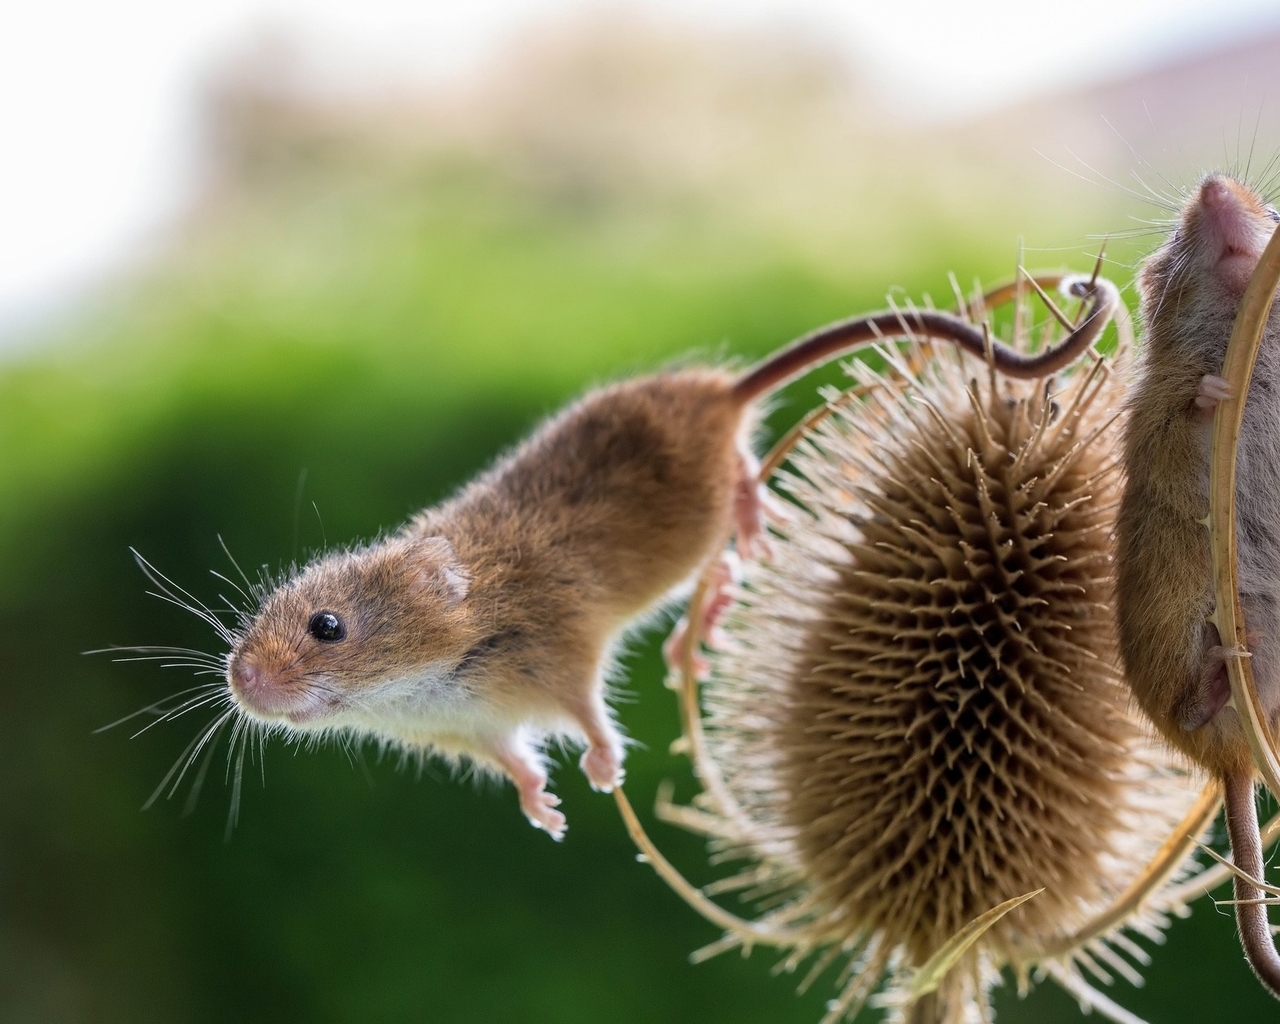 Картинка: Полевые мыши, мышки, растение, две, размытый фон